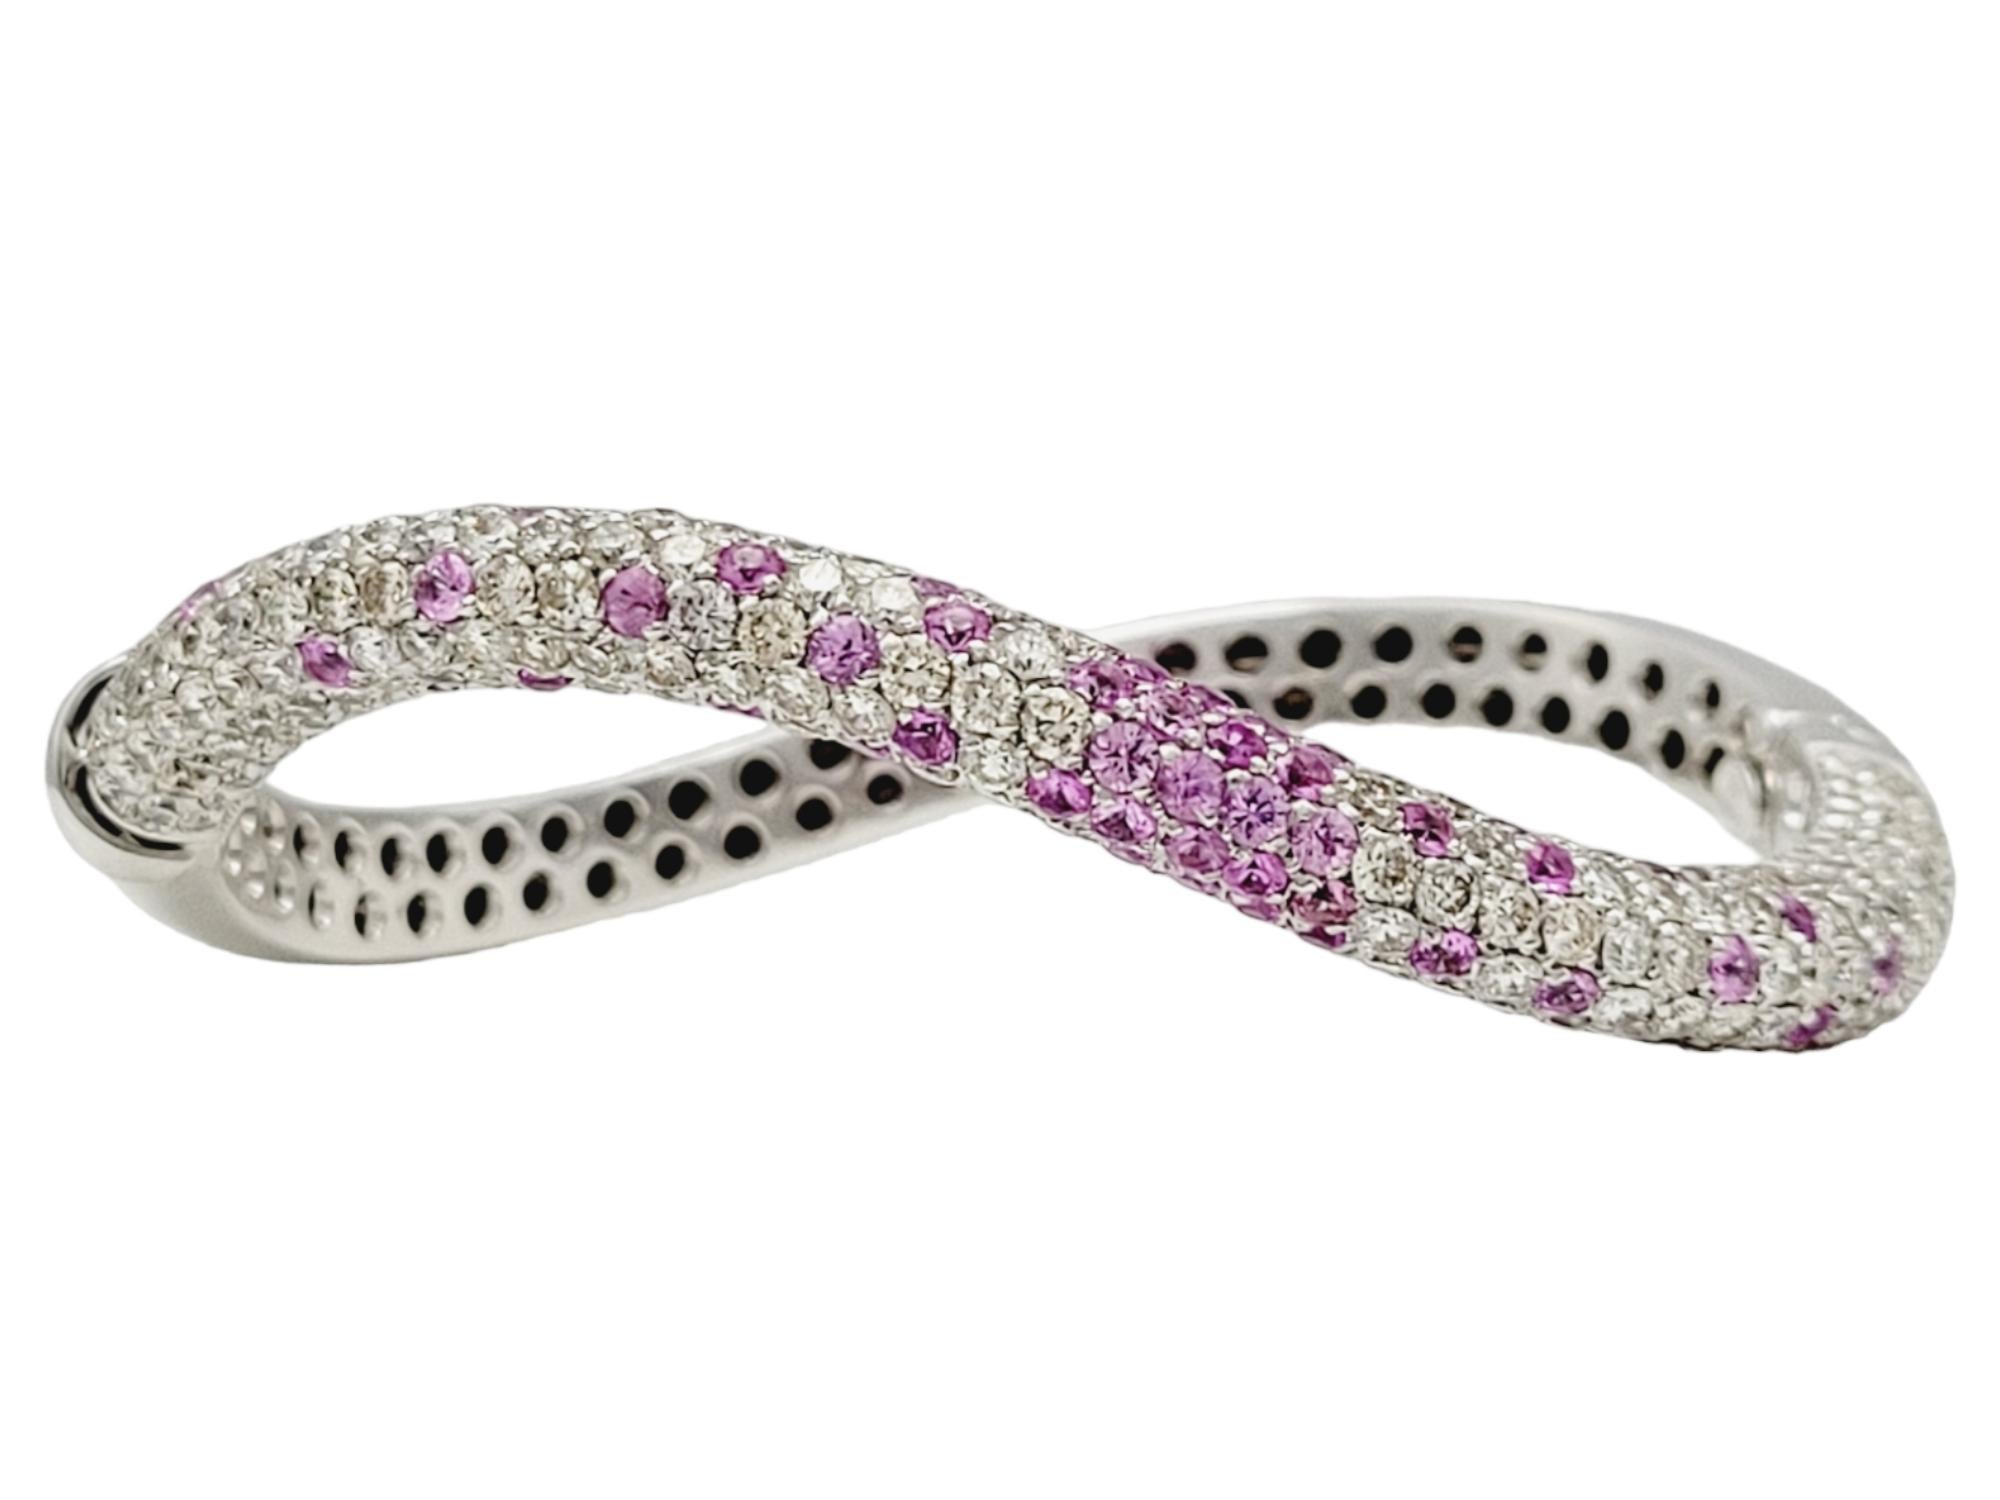 Dies ist ein wunderschönes, sehr feminines Armband mit Diamanten und rosa Saphiren. Das moderne, geschwungene Design wird durch die farbenfrohe Einstreuung von rosa Saphiren im Kontrast zu den eisweißen Diamanten noch verstärkt. Ein absolut schönes